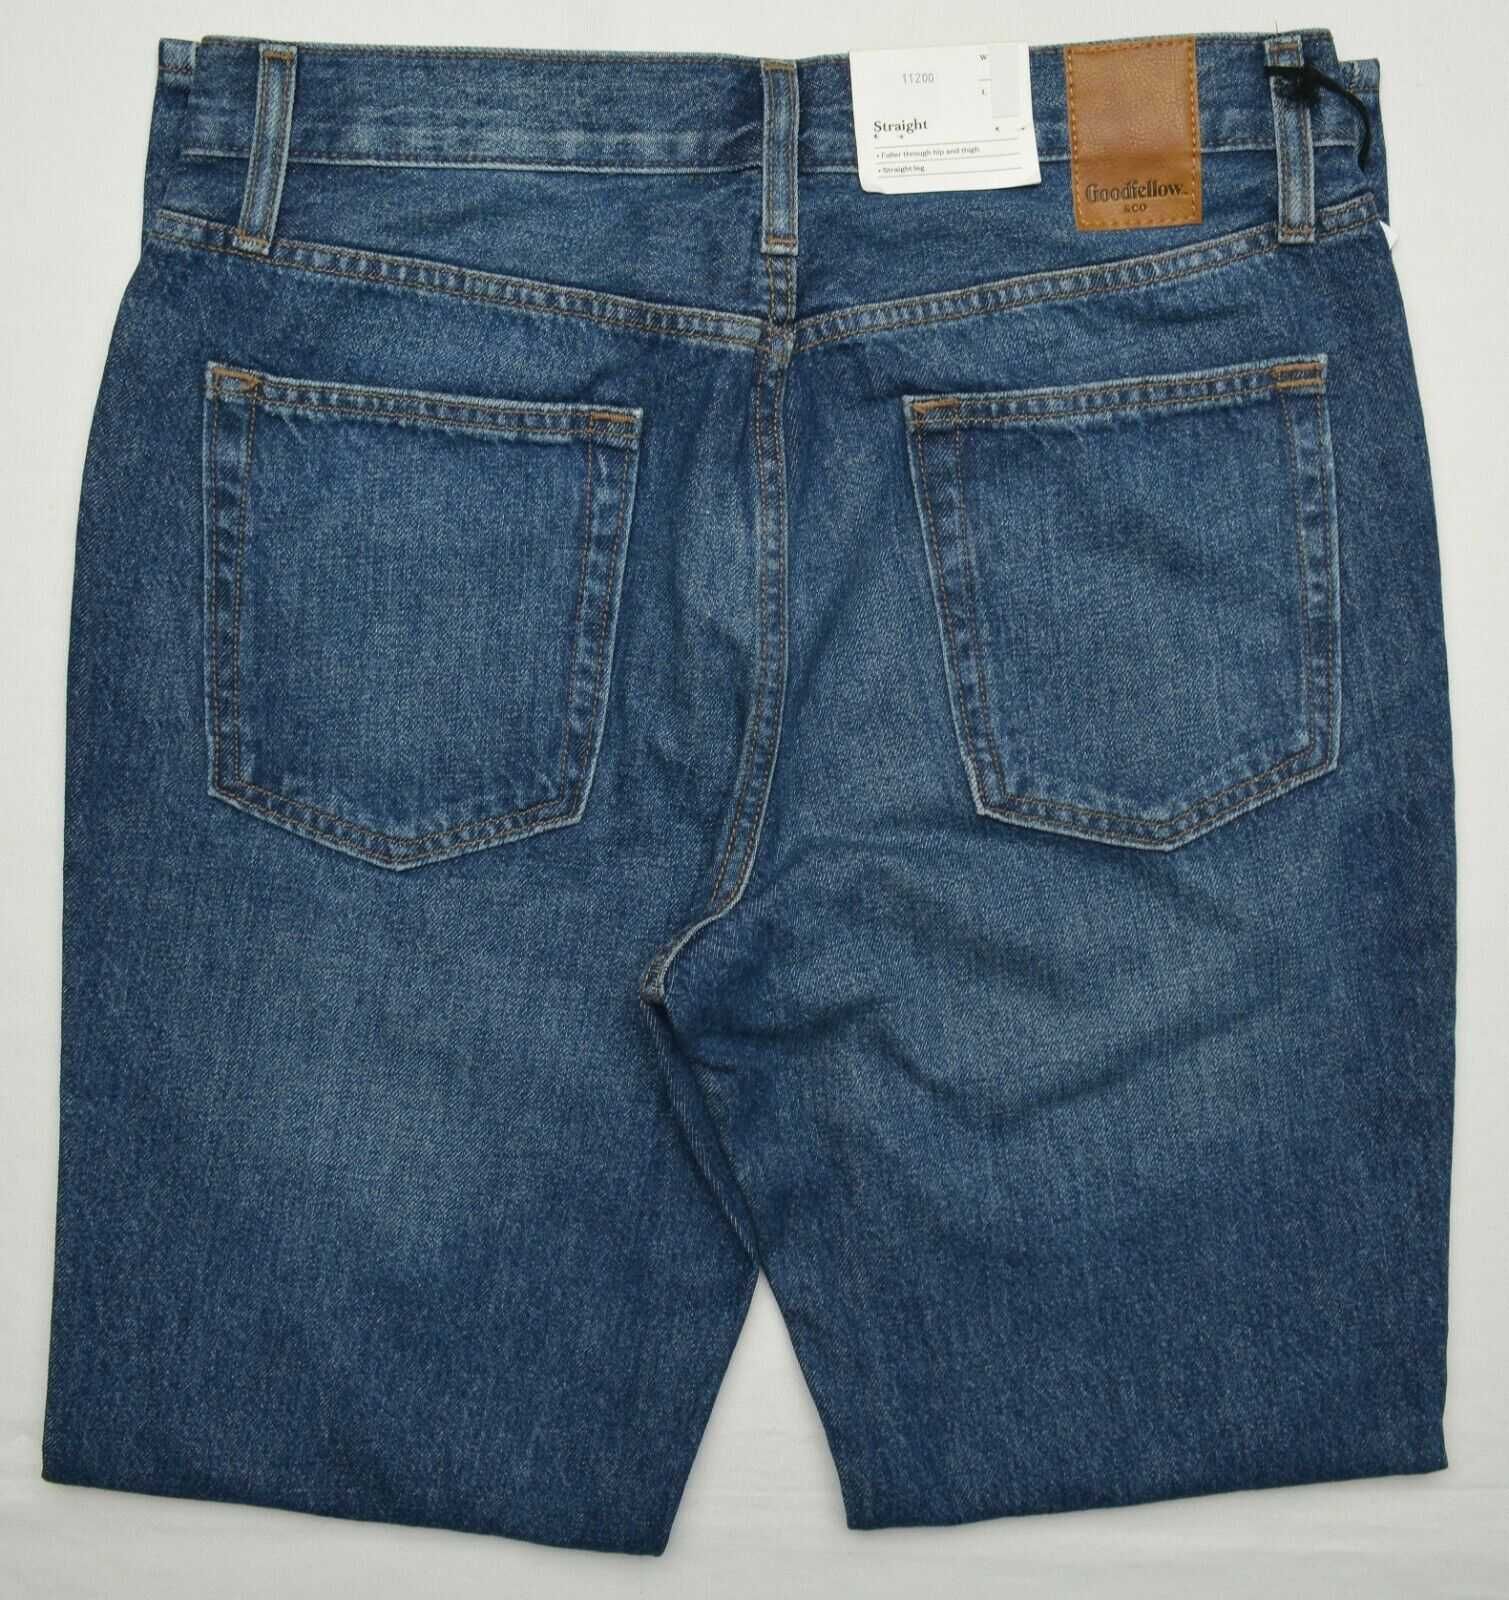 Новые мужские джинсы Goodfellow W36 L30 100% хлопок